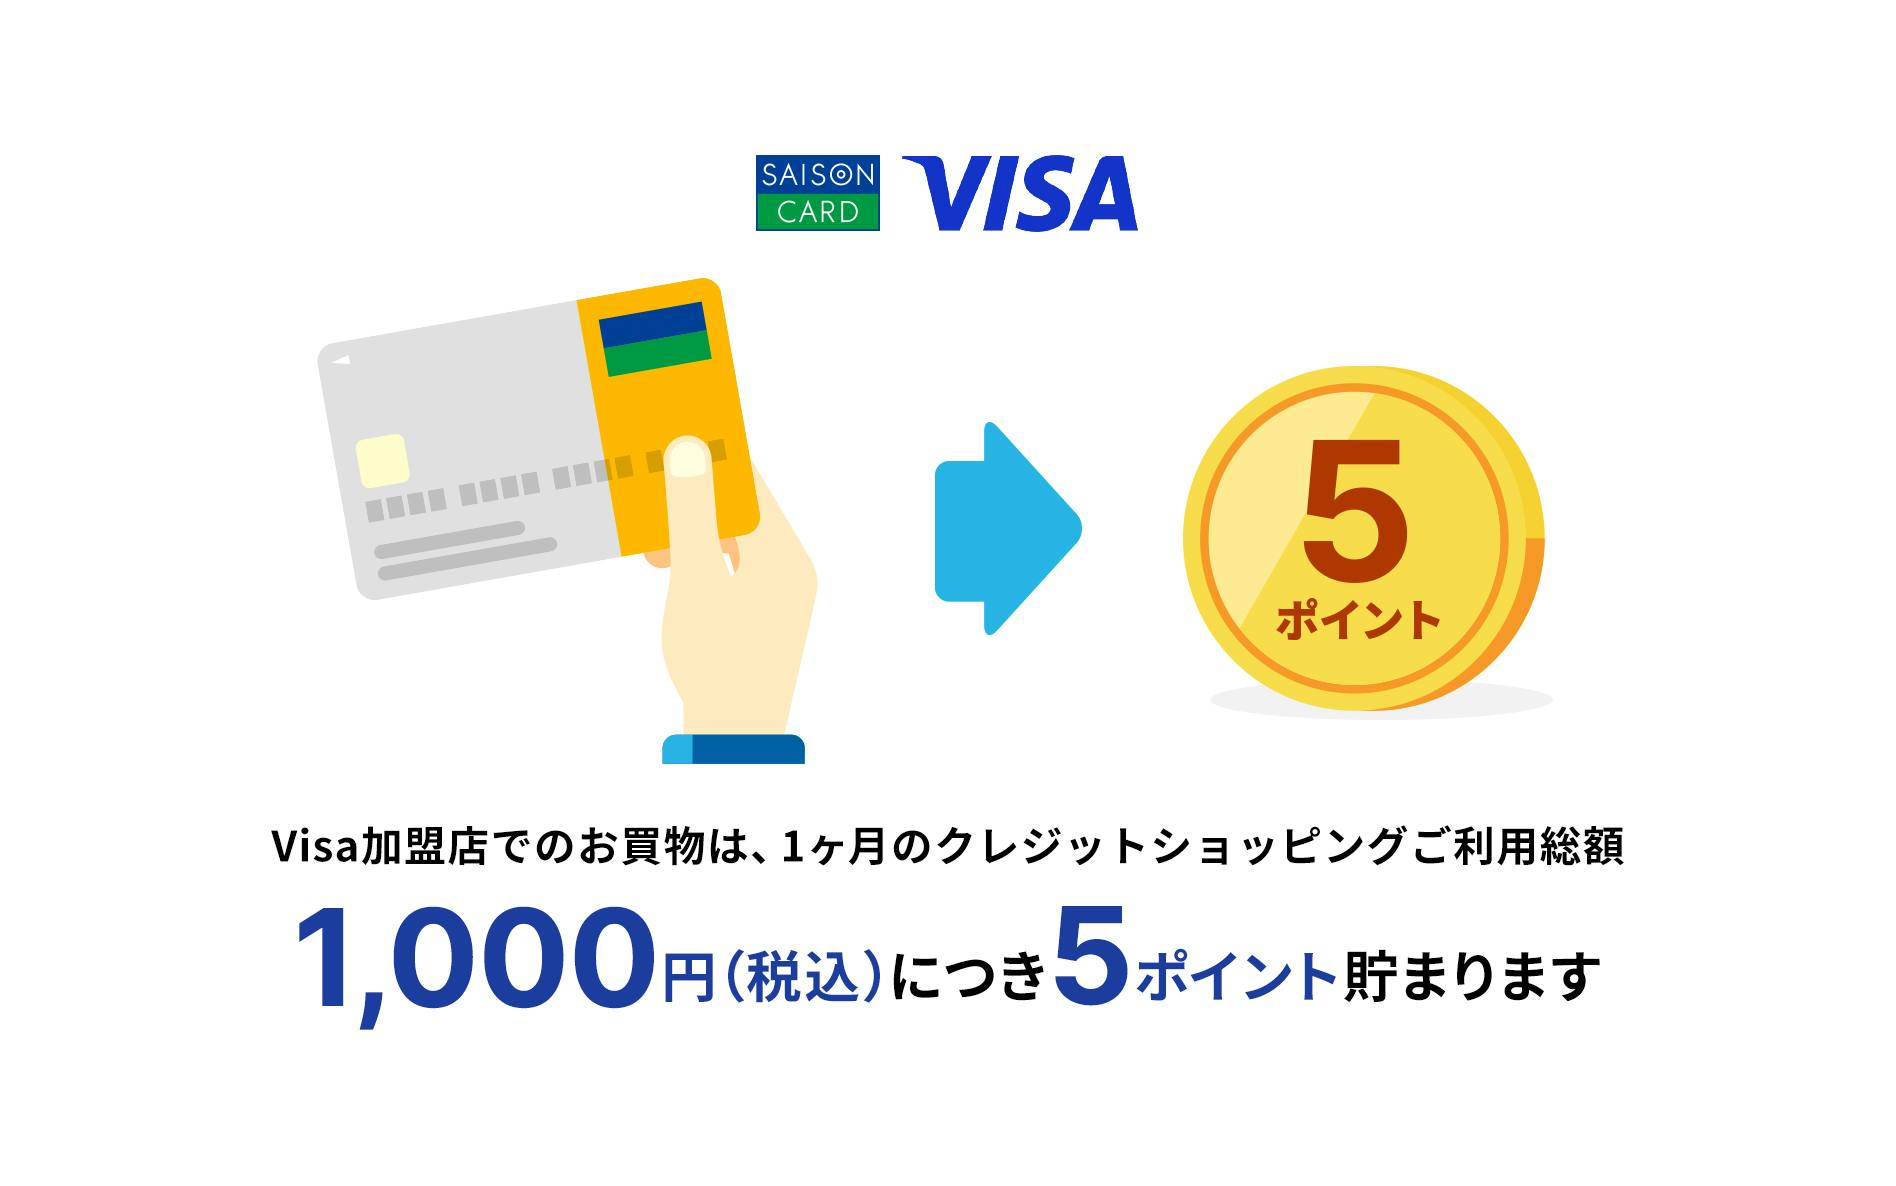 Visa加盟店でのお買物は、1ヶ月のクレジットショッピングご利用総額1000円（税込）につき5ポイント貯まります。